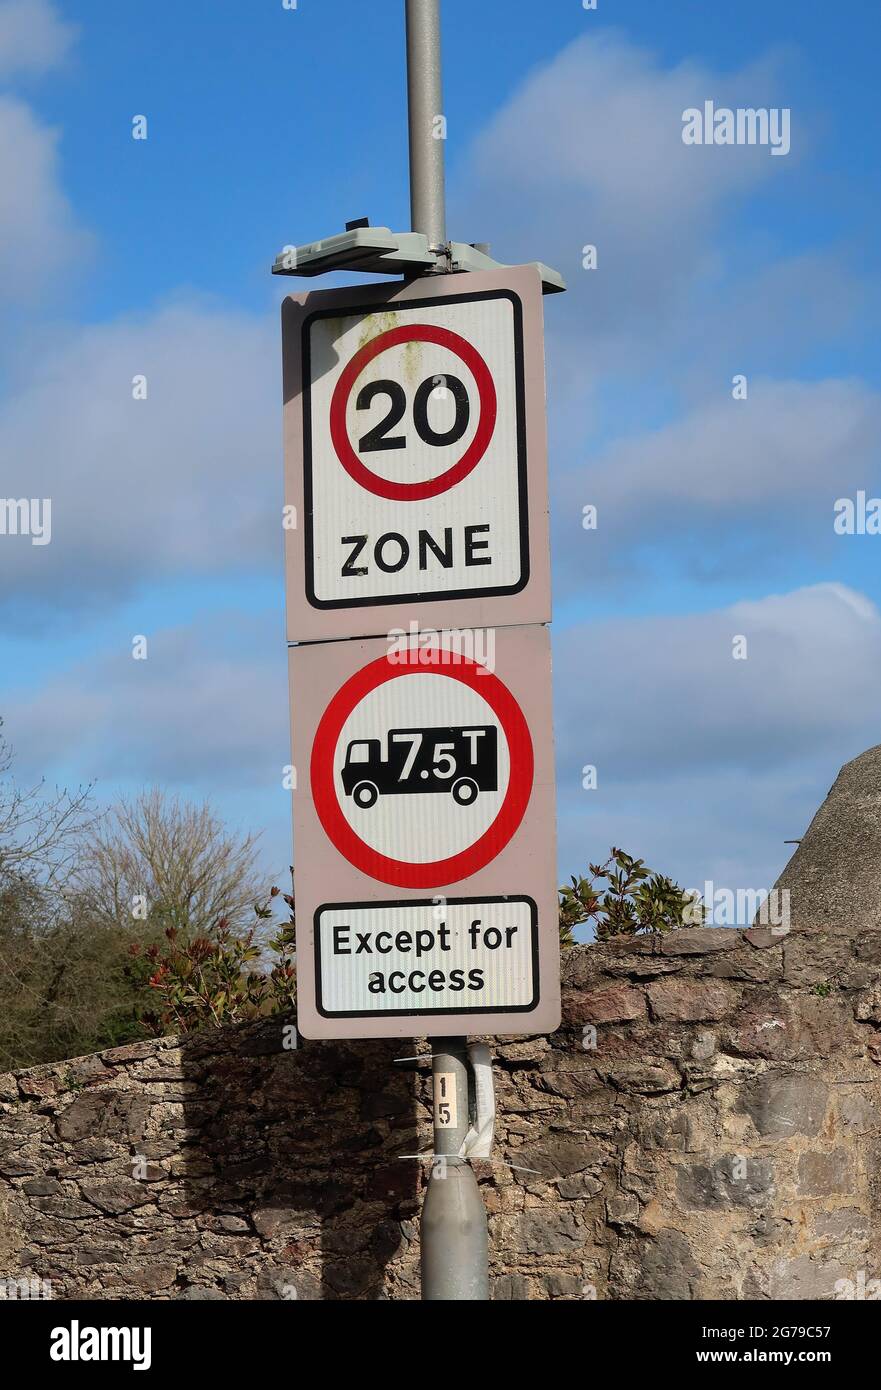 Un segnale stradale per il Regno Unito all'inizio di una zona con limite di velocità di 20 km/h, in cui i veicoli sono limitati a 7.5 tonnellate, ad eccezione dell'accesso. Foto Stock